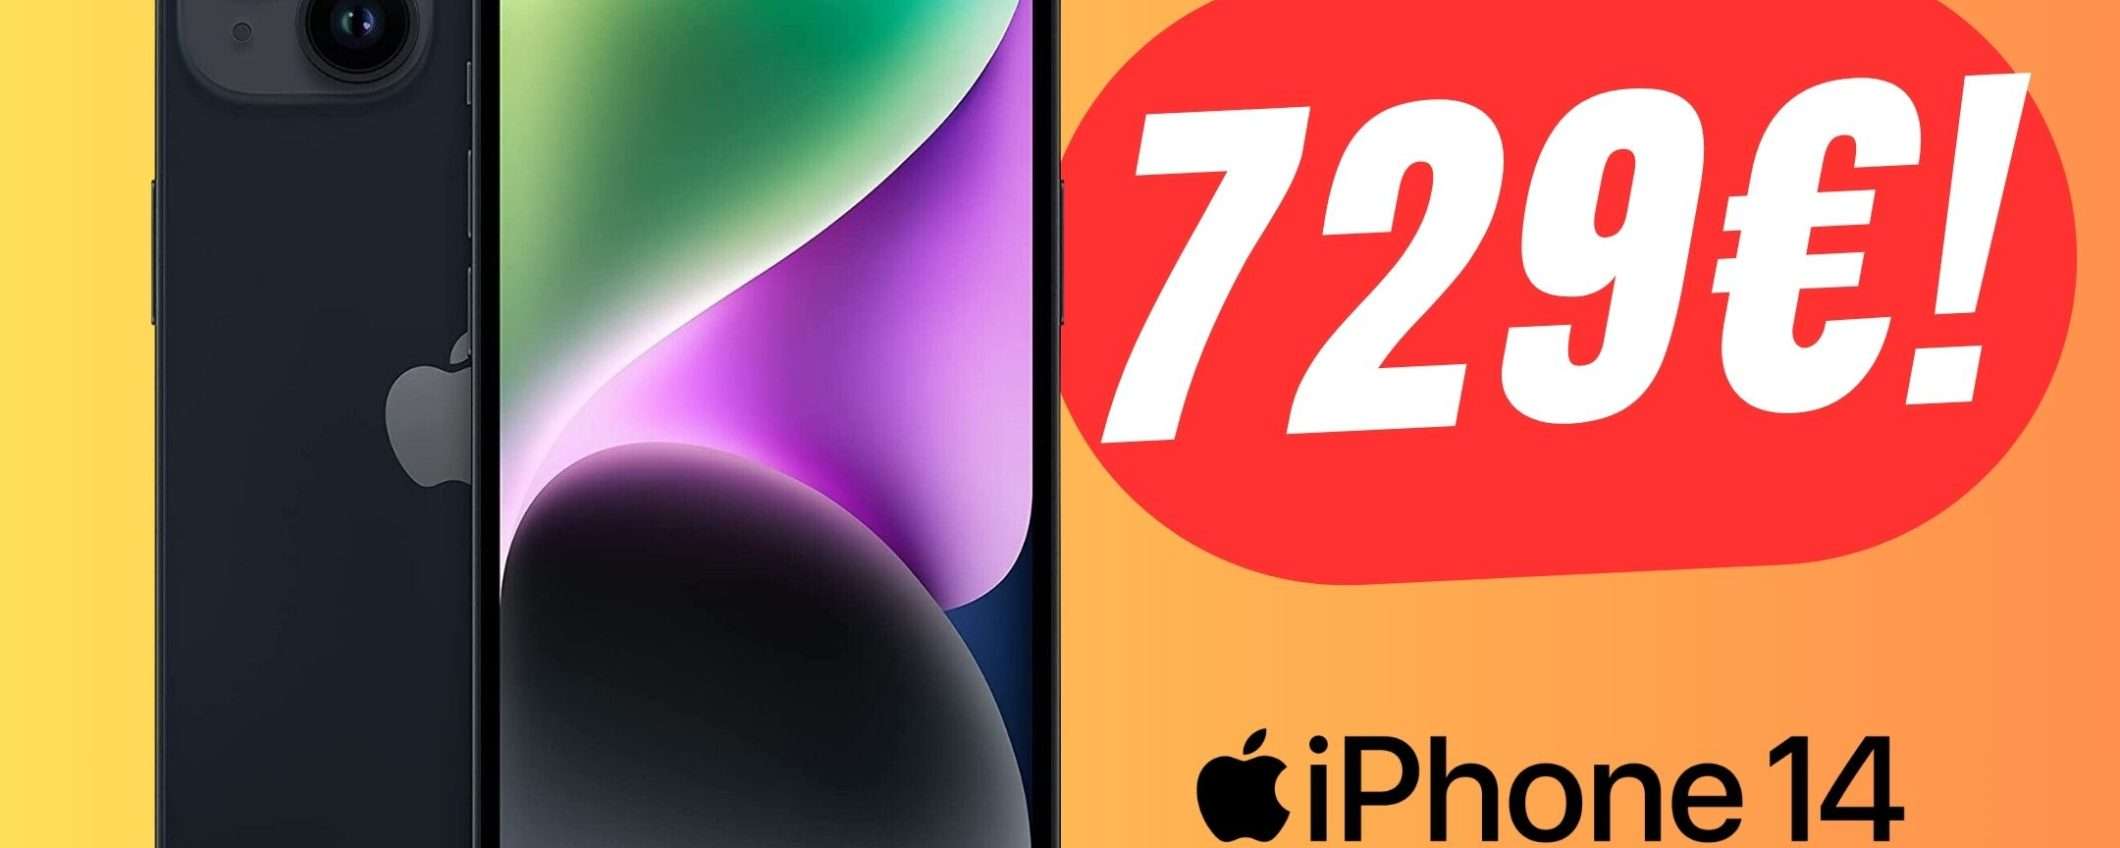 Apple iPhone 14 è in SCONTO a soli 729€ su eBay!